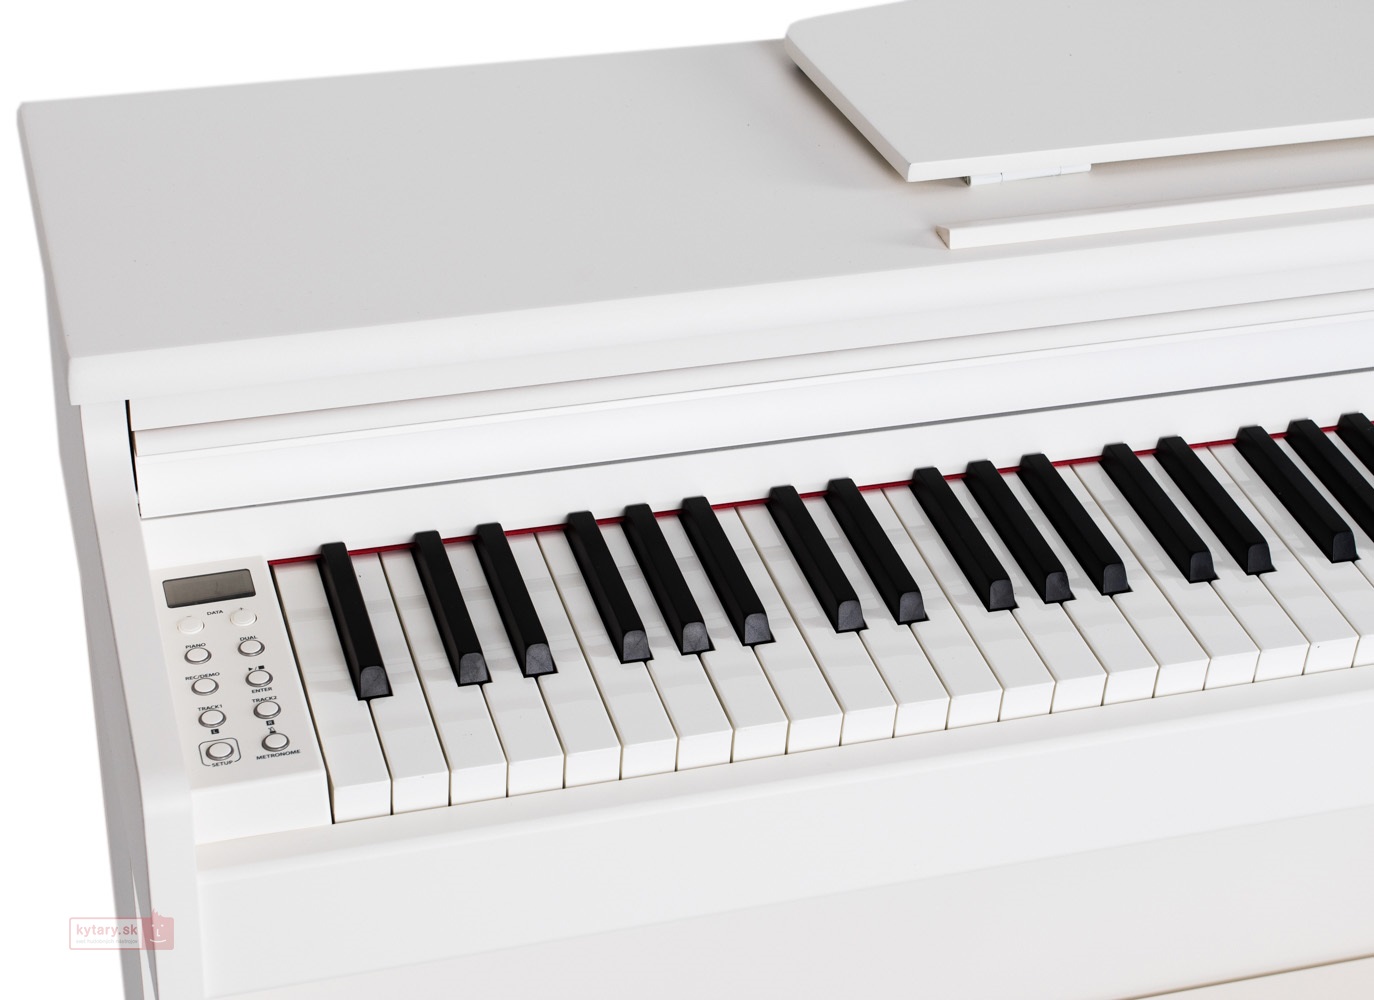 پیانوهای دیجیتال دایناتون slp210